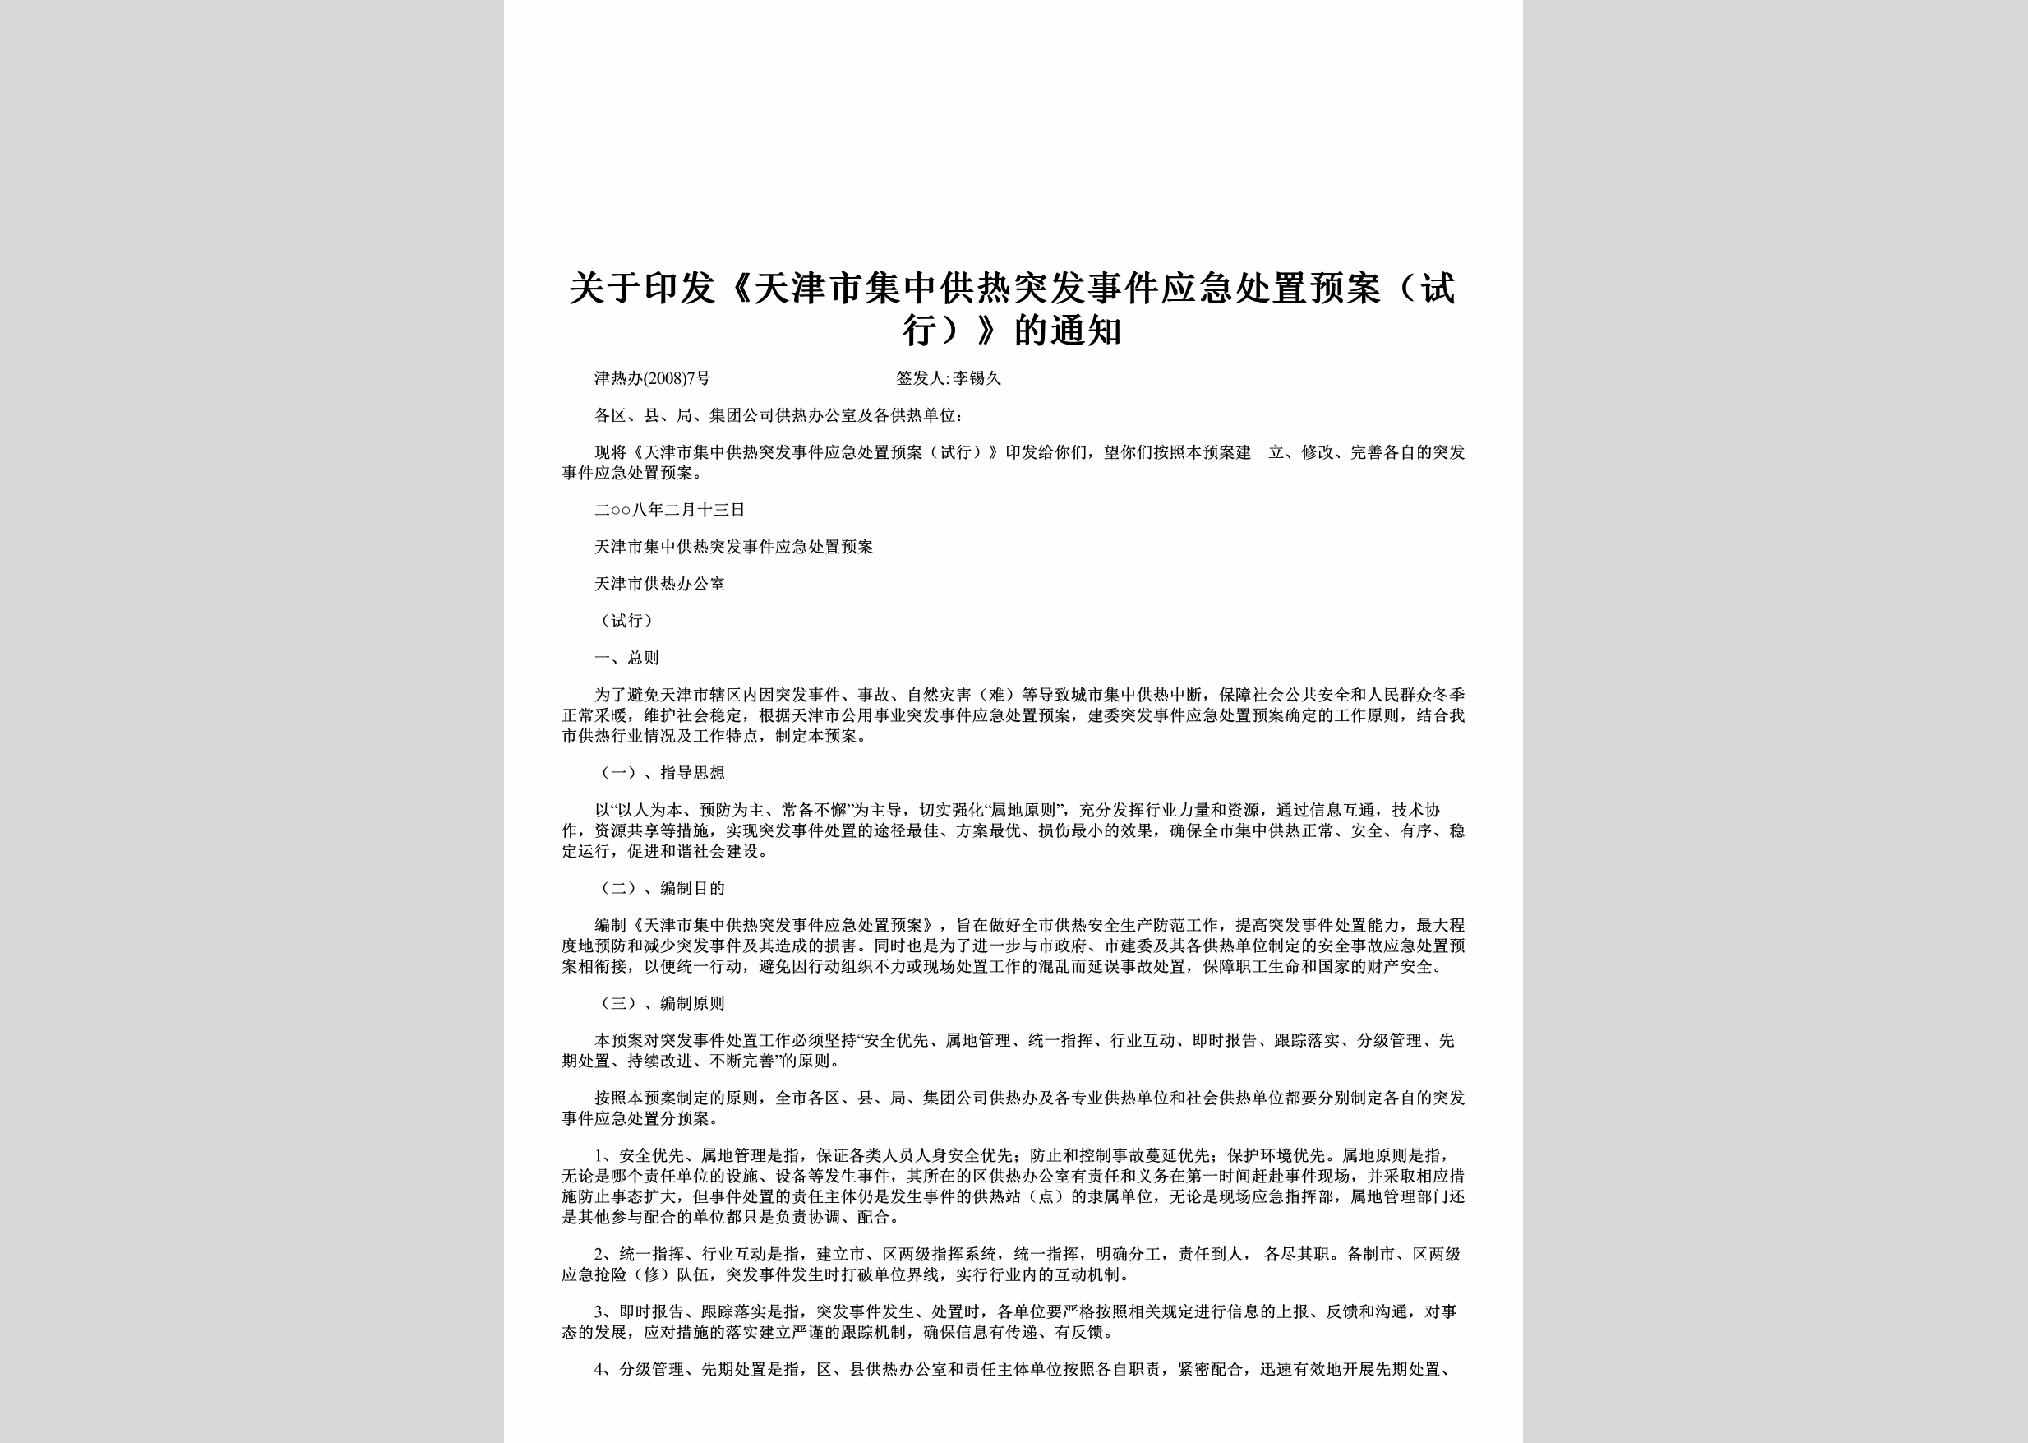 津热办[2008]7号：关于印发《天津市集中供热突发事件应急处置预案（试行）》的通知